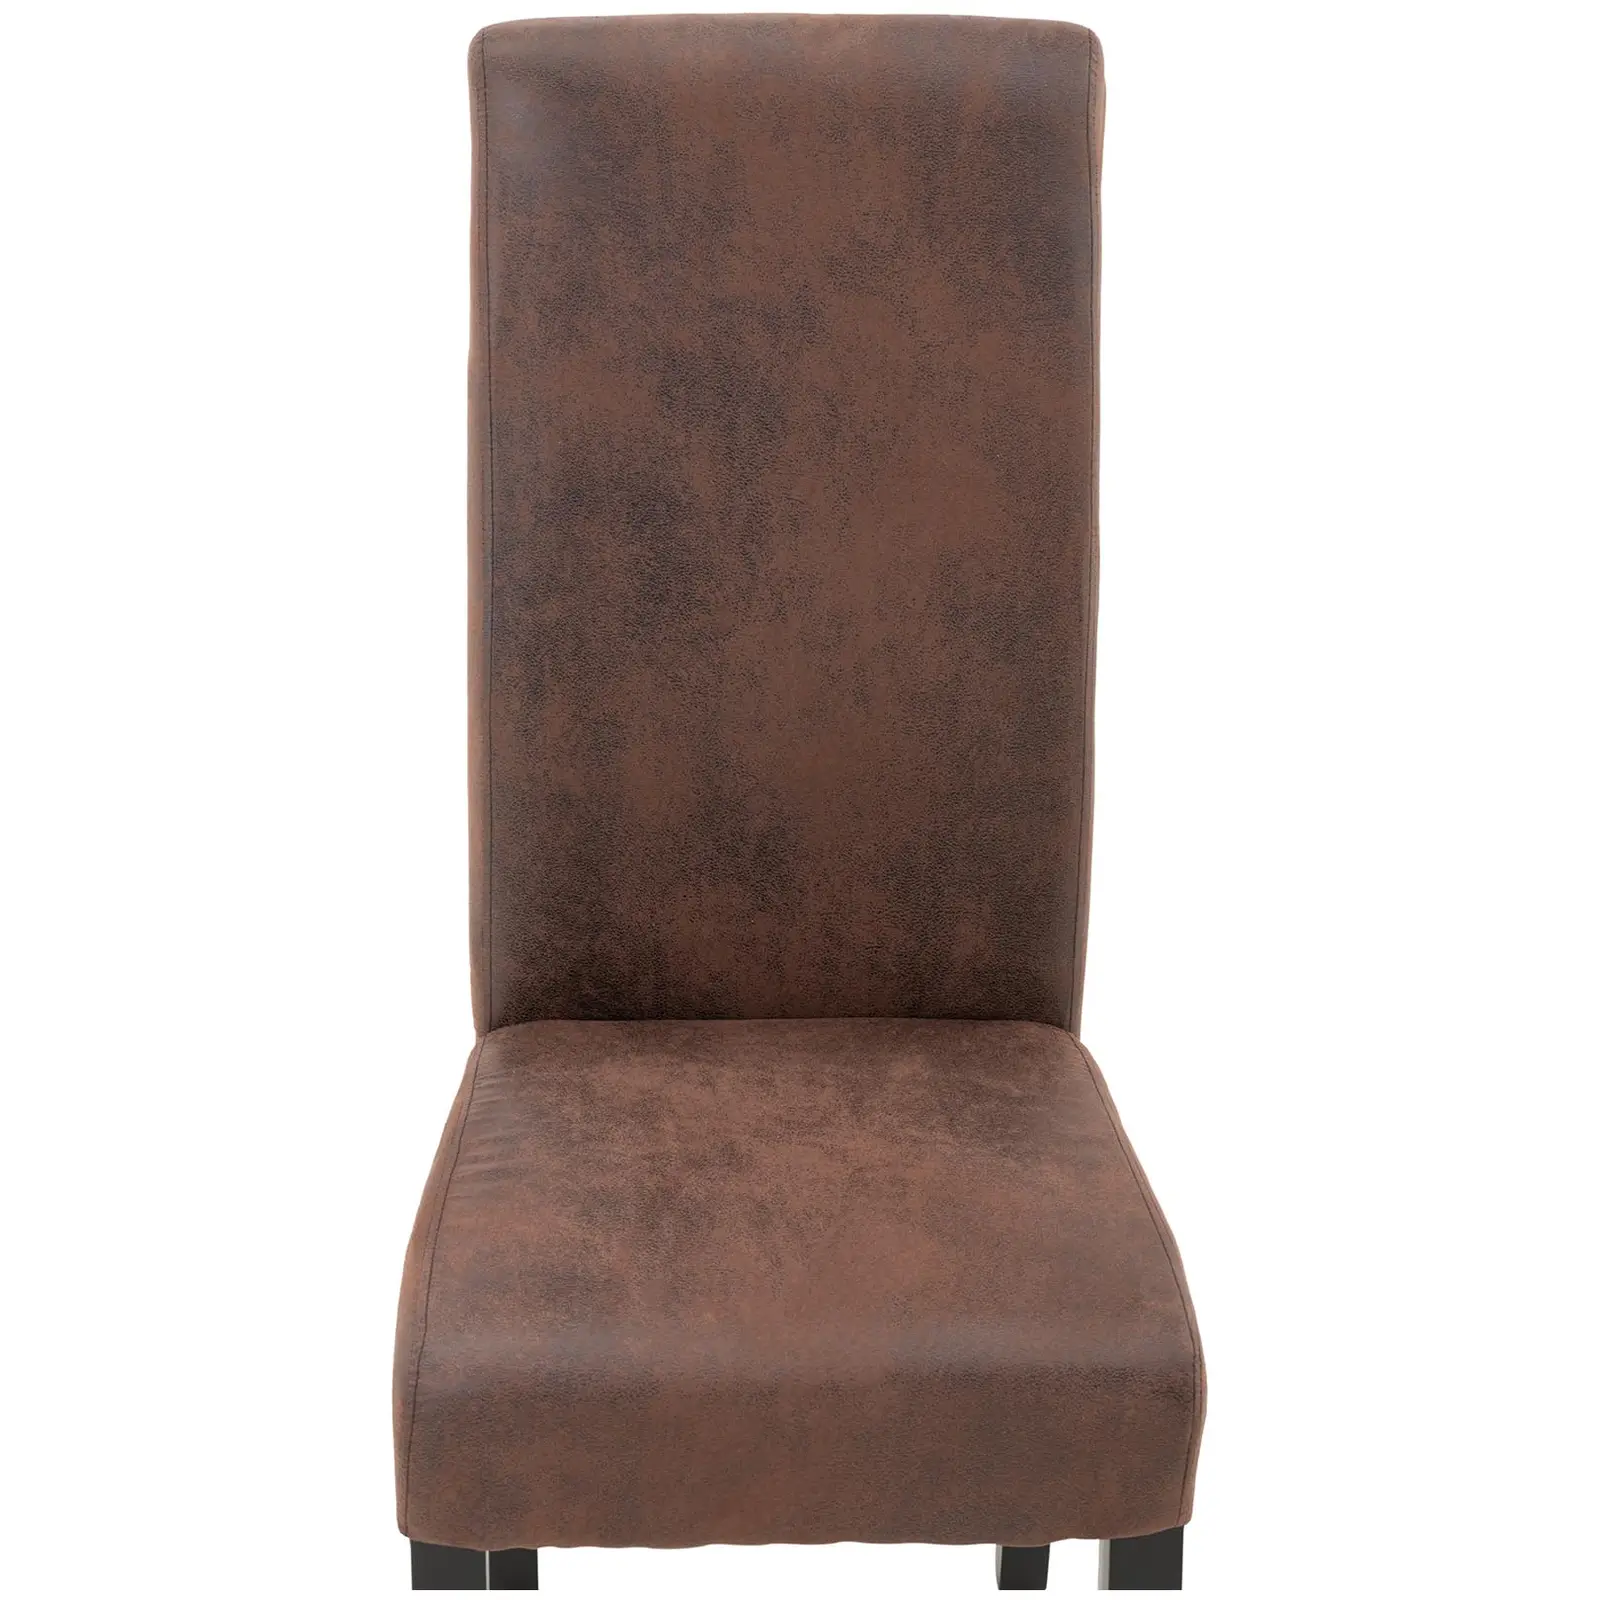 Krzesło tapicerowane - brązowe - 2 szt.